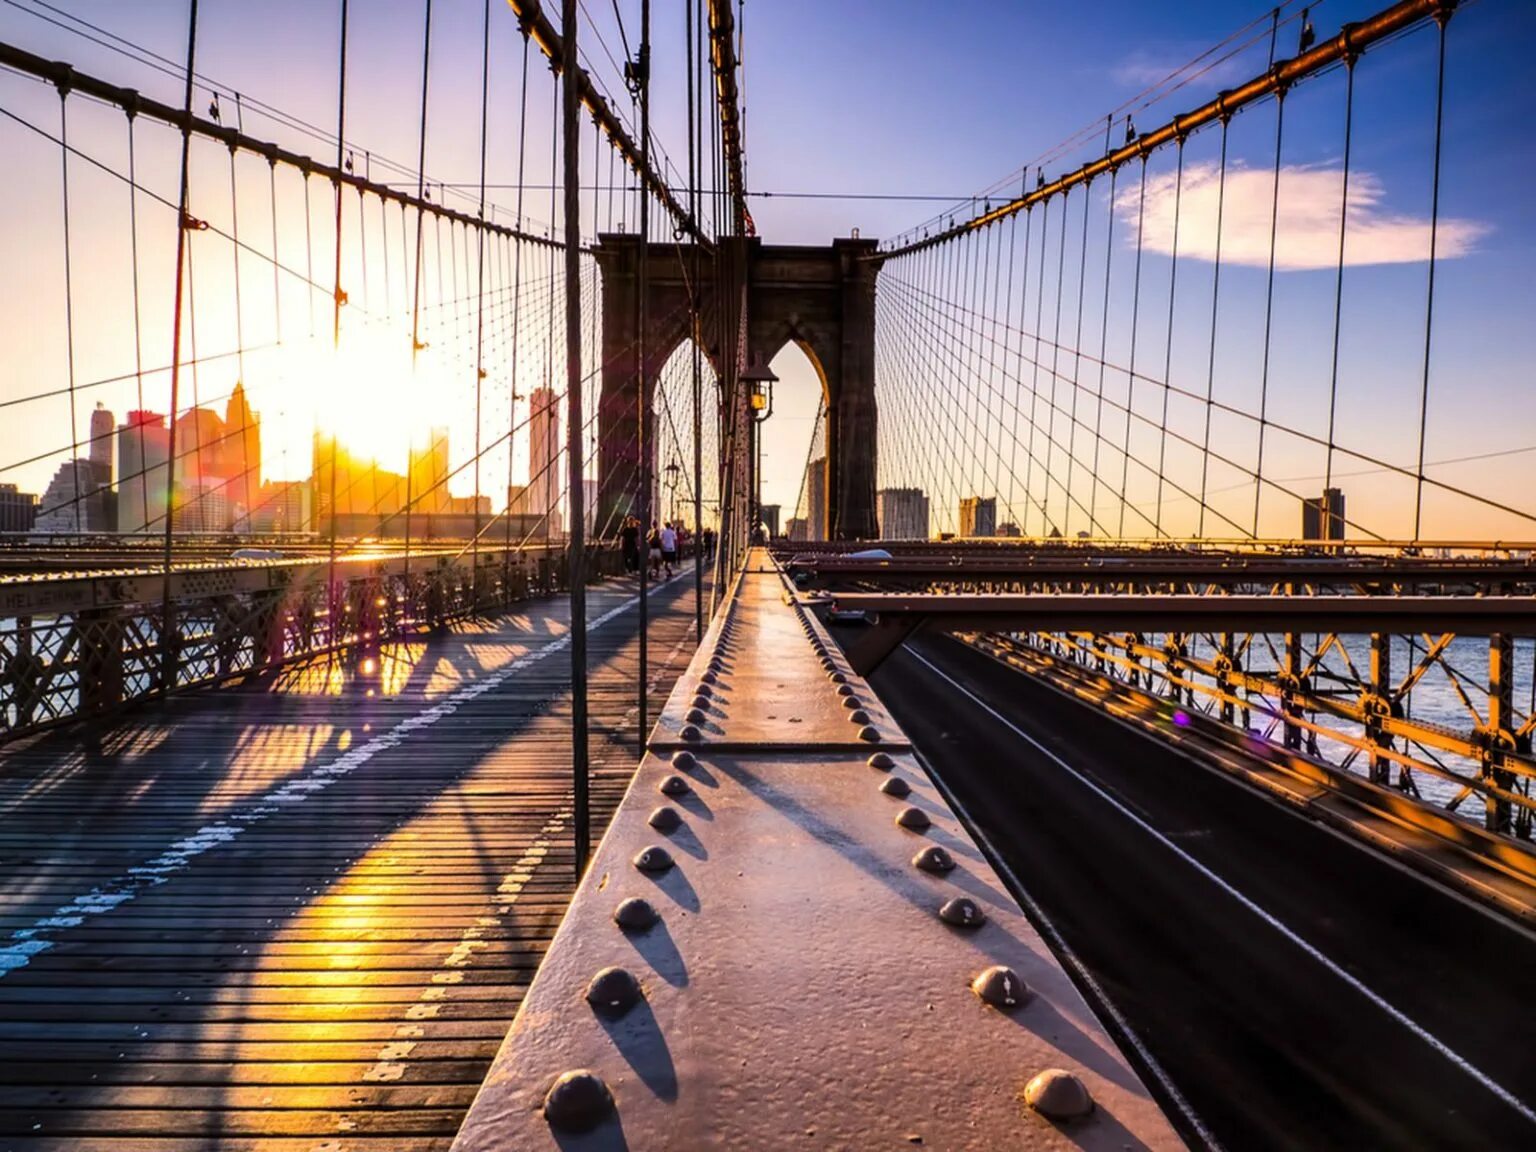 Бруклин мост. Бруклинский мост Нью-Йорк. Пешеходный мост в Нью-Йорке. Бруклинский мост Нью-Йорк набережная. Бруклинский мост пешеходный.